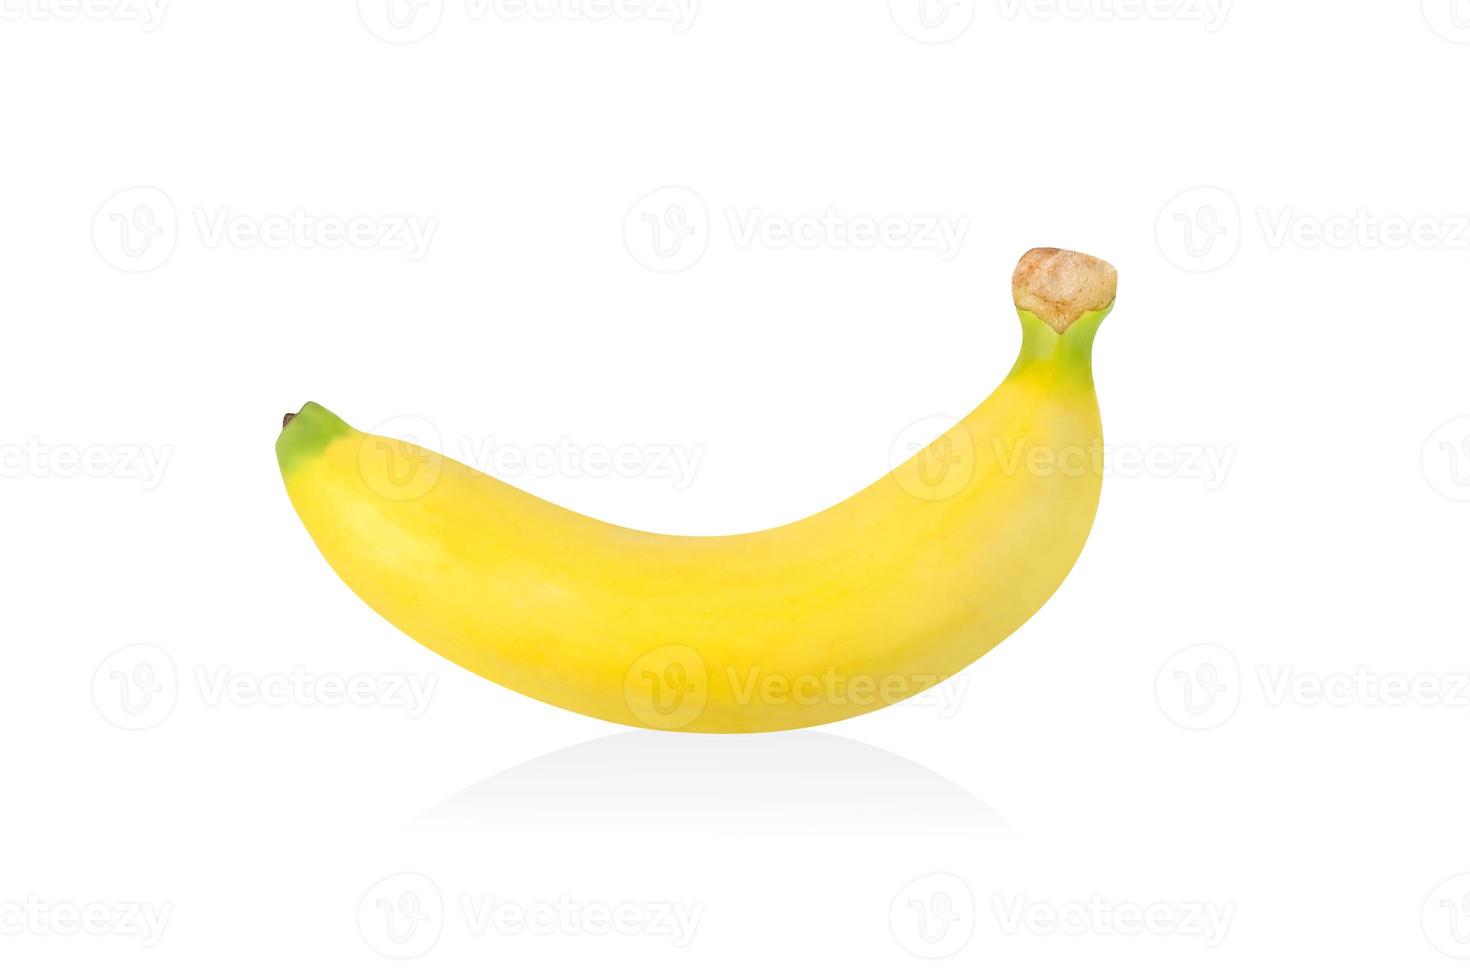 mogen banan isolerad på vit bakgrund, inkluderar urklippsbana foto